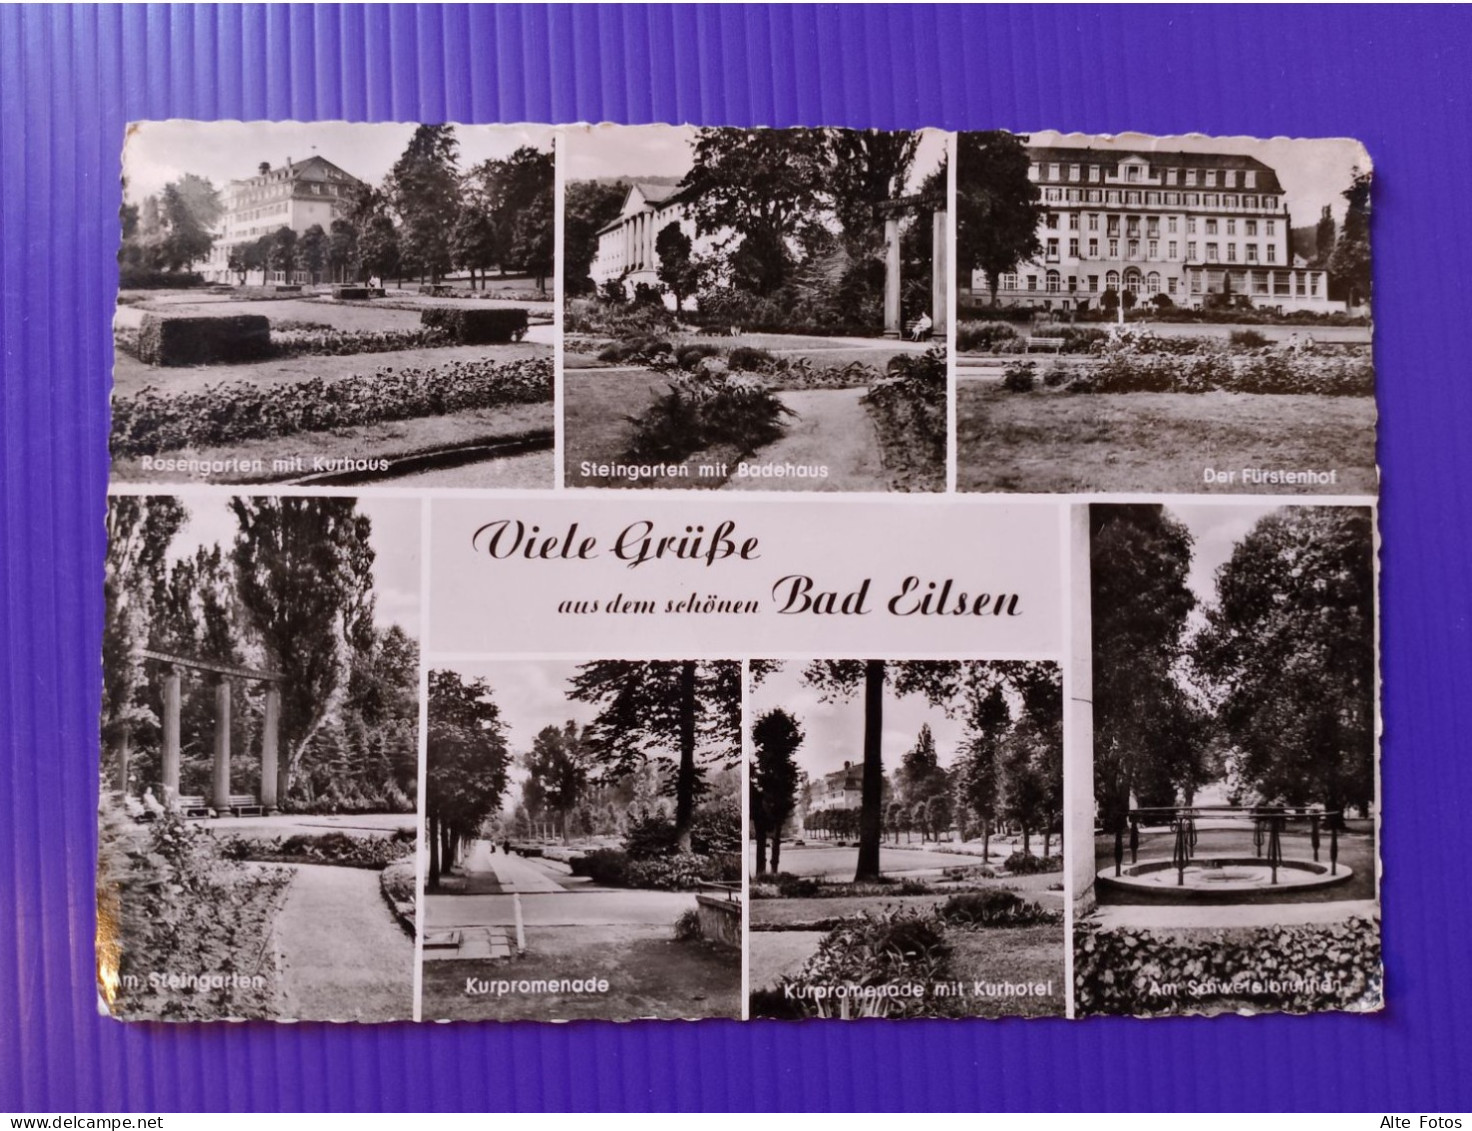 Alte AK Ansichtskarte Postkarte Bad Eilsen Schaumburg Niedersachsen Germany Deutschland Alt Old Postcard Allemagne Card - Schaumburg